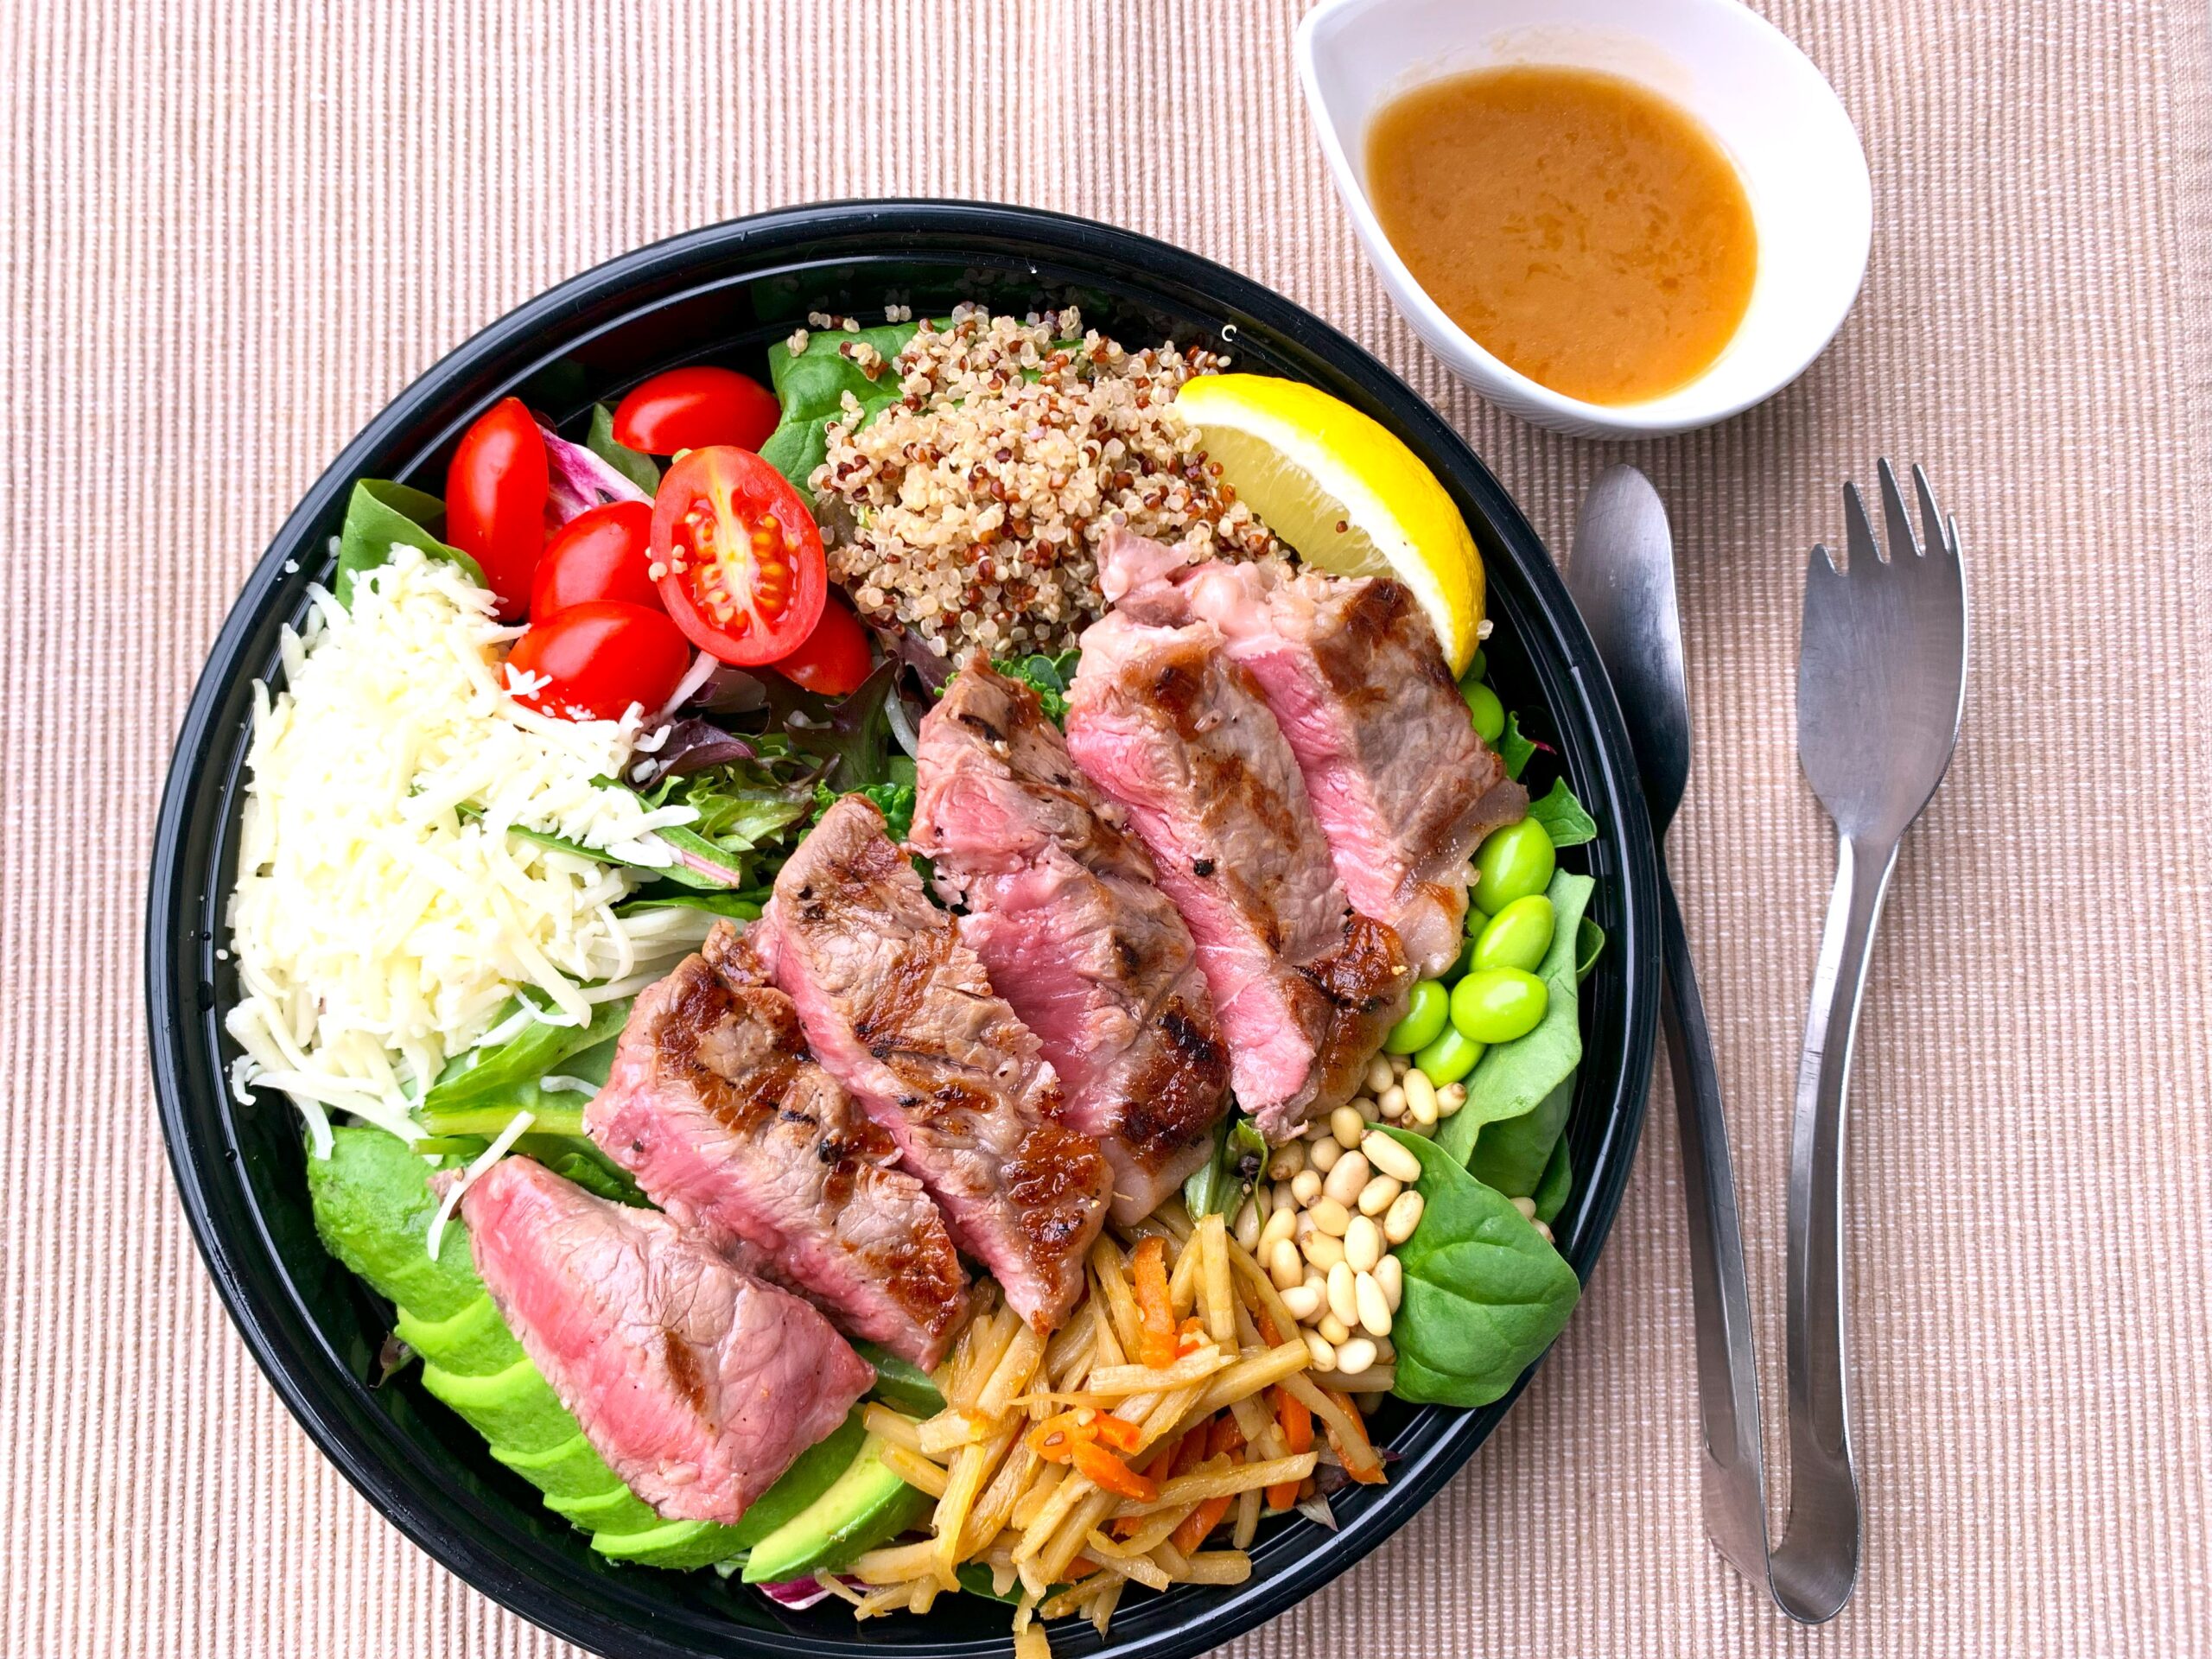 American Wagyu Striploin Steak Salad